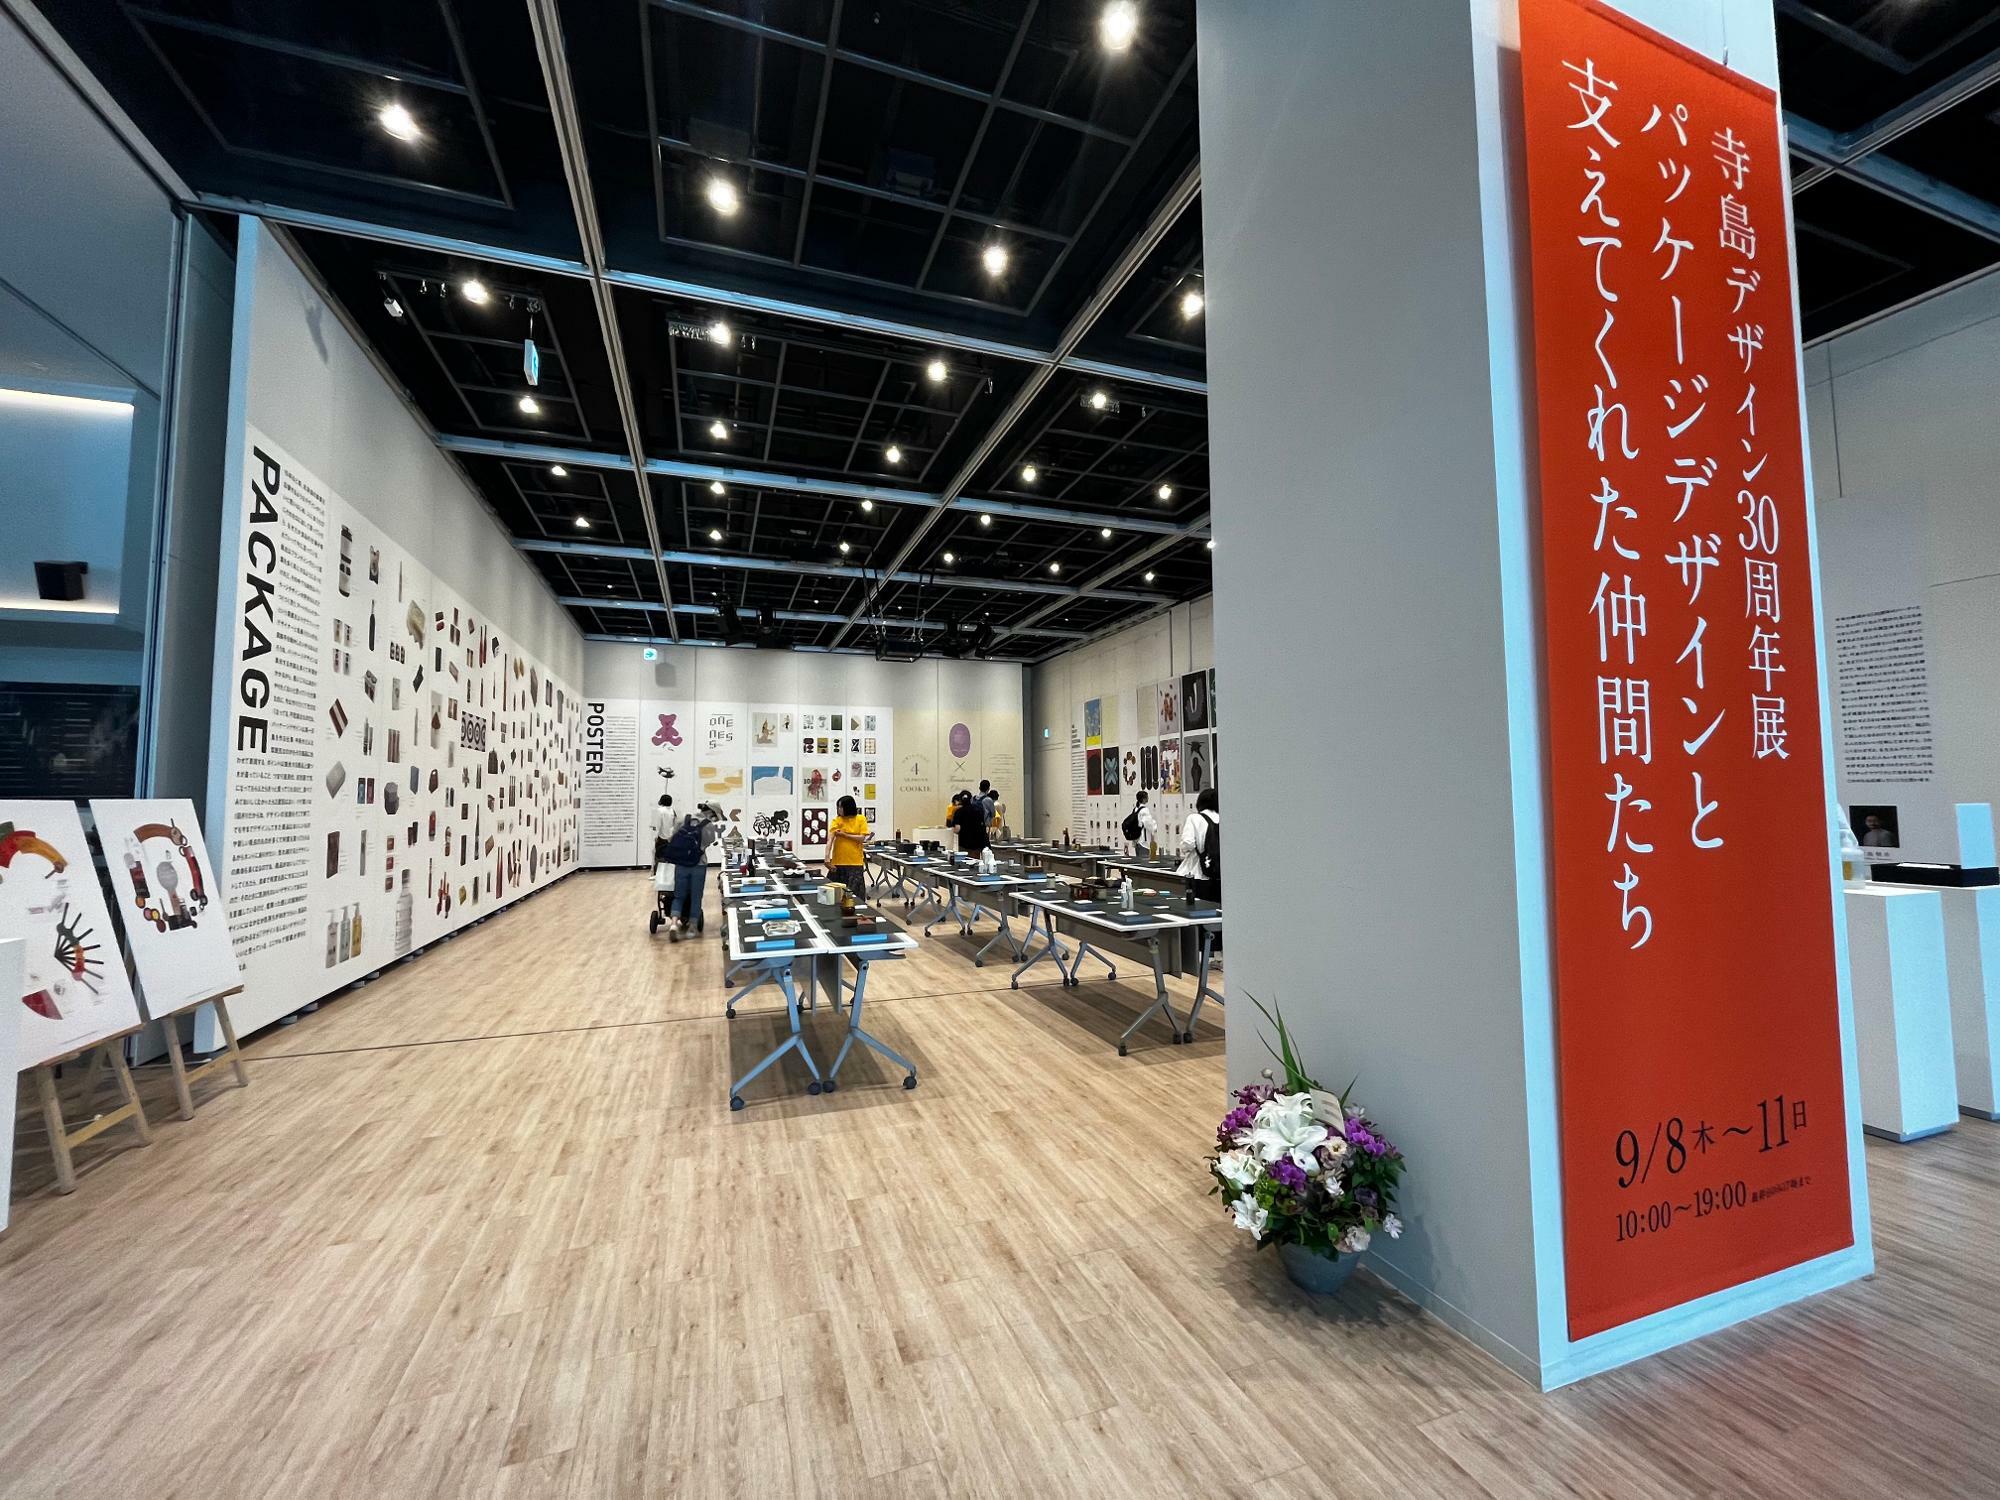 さまざまなパッケージデザインをしてきた寺島デザイン事務所。作品展は11日まで開催しています